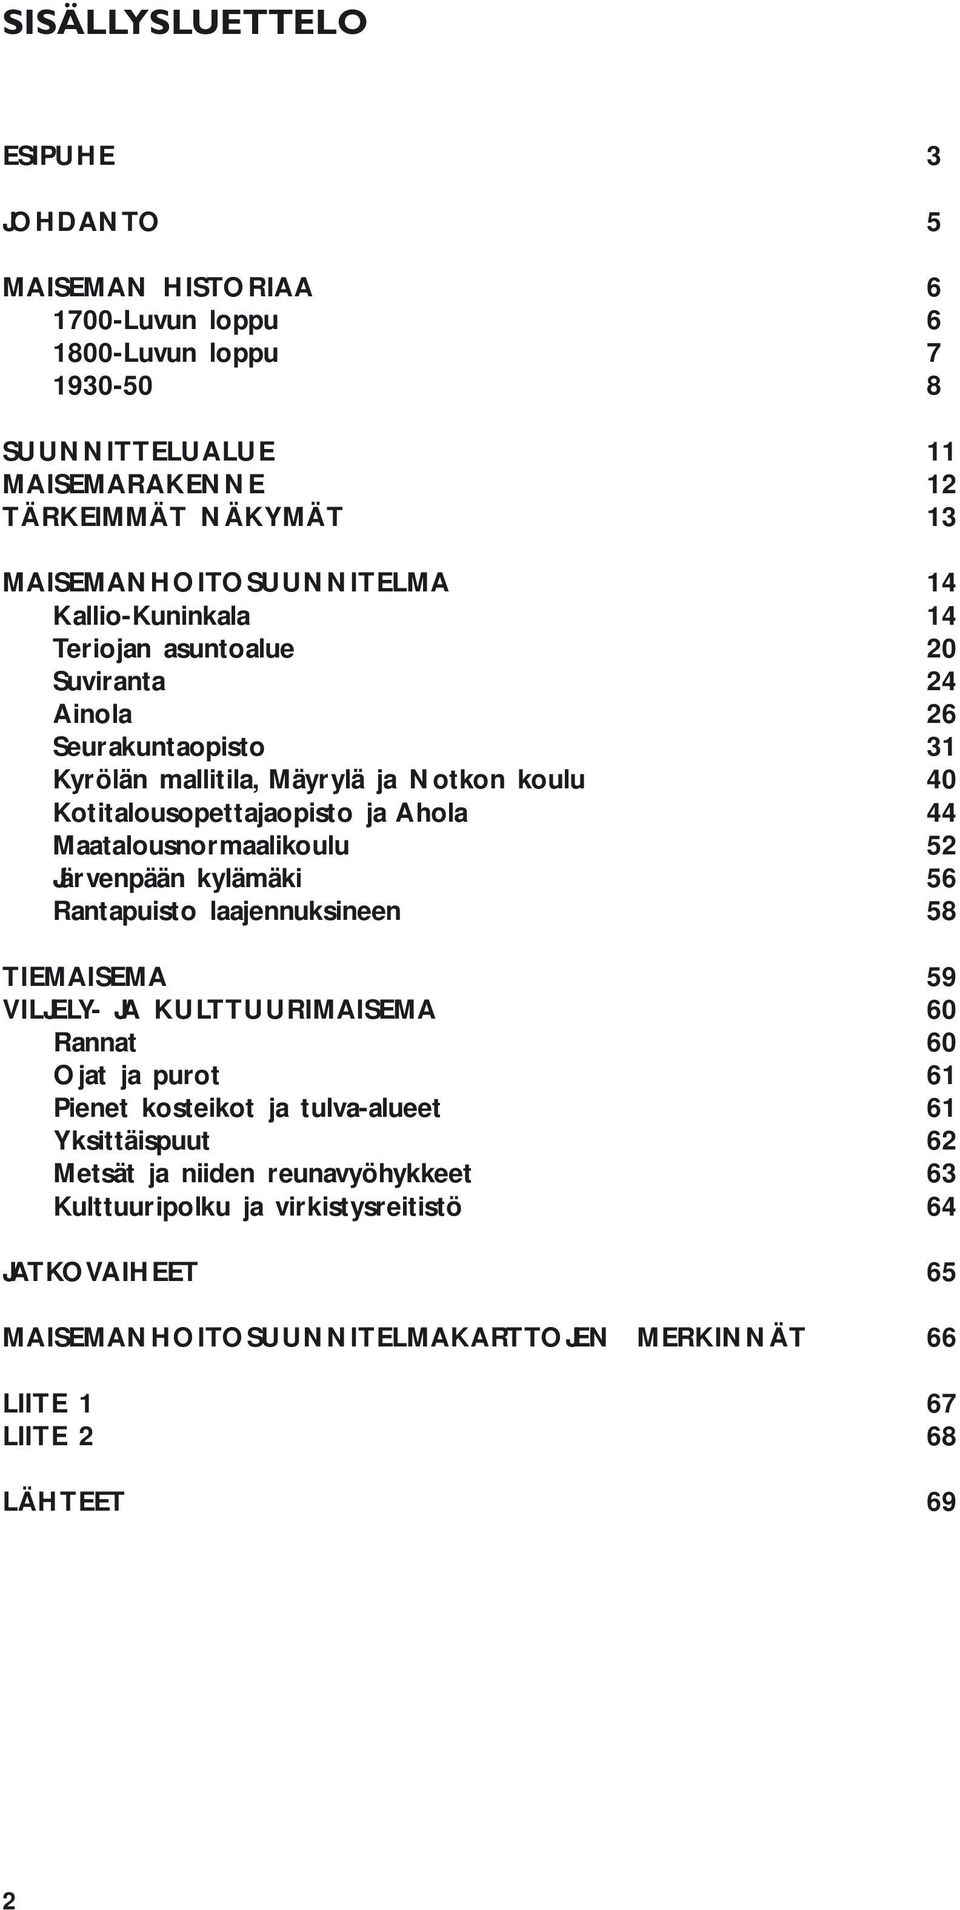 ja Ahola 44 Maatalousnormaalikoulu 52 Järvenpään kylämäki 56 Rantapuisto laajennuksineen 58 TIEMAISEMA 59 VILJELY- JA KULTTUURIMAISEMA 60 Rannat 60 Ojat ja purot 61 Pienet kosteikot ja